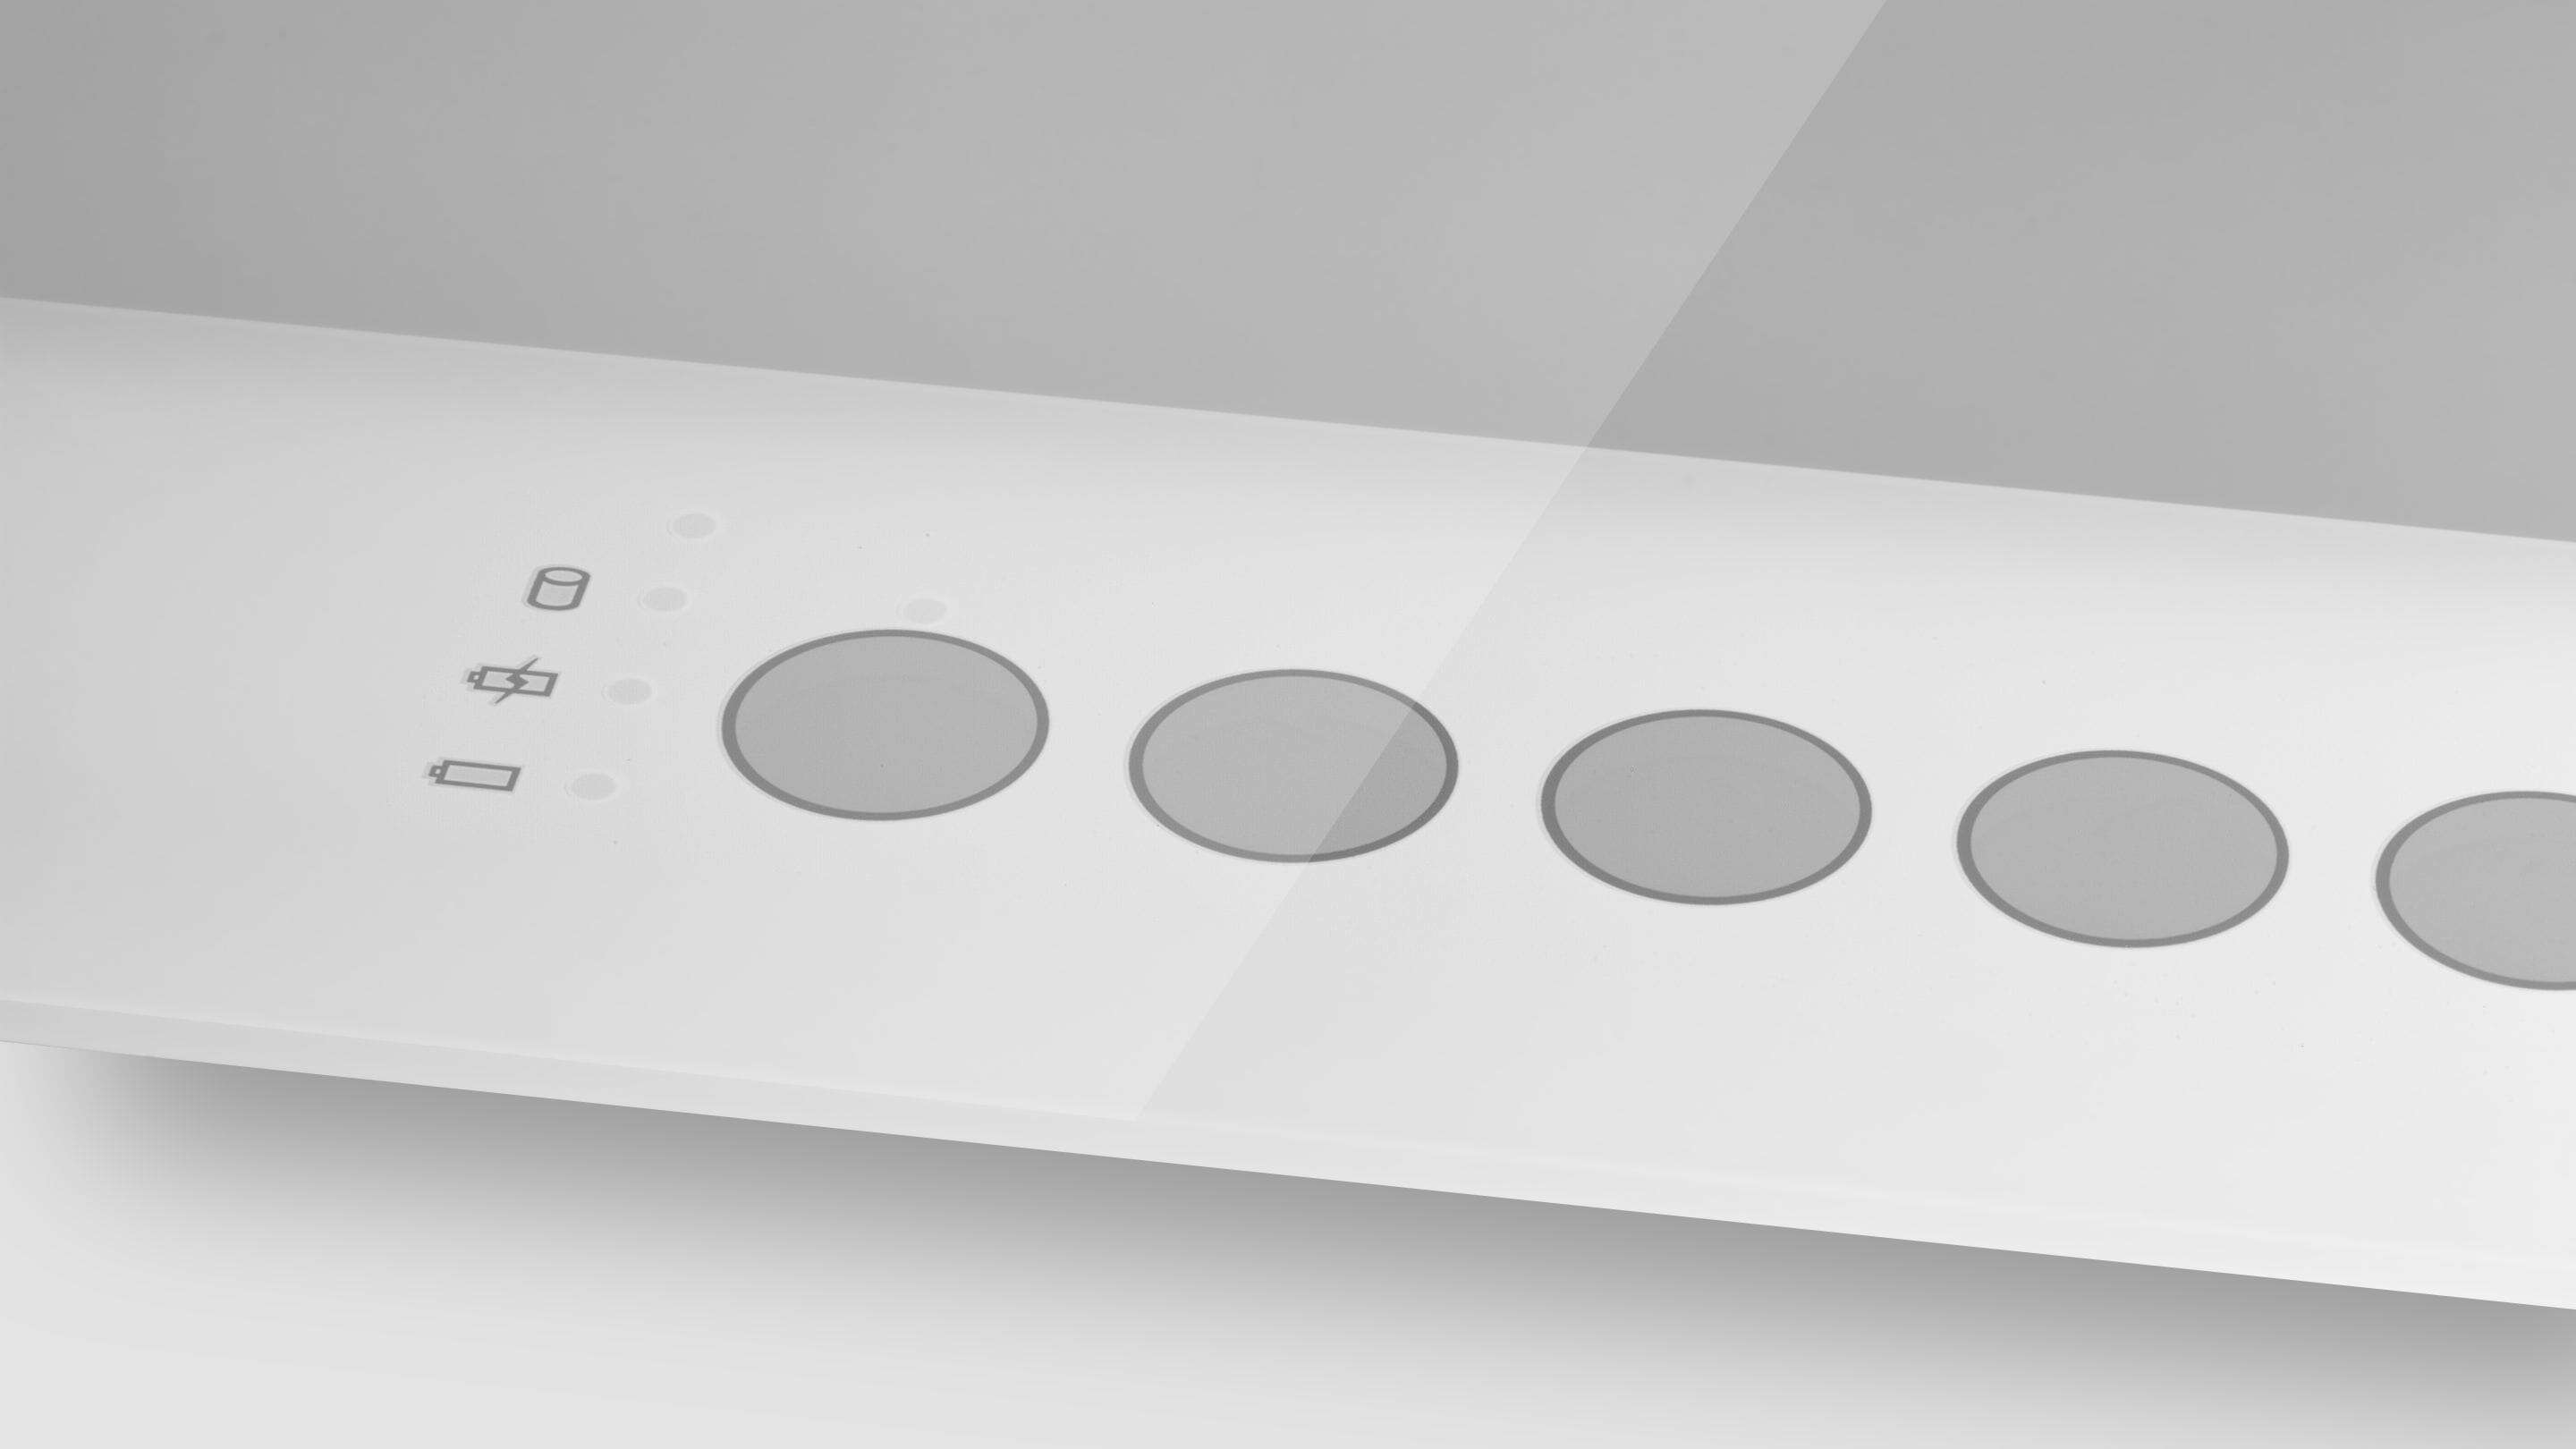 Botões impressos em vidro Touchscreen PCAP